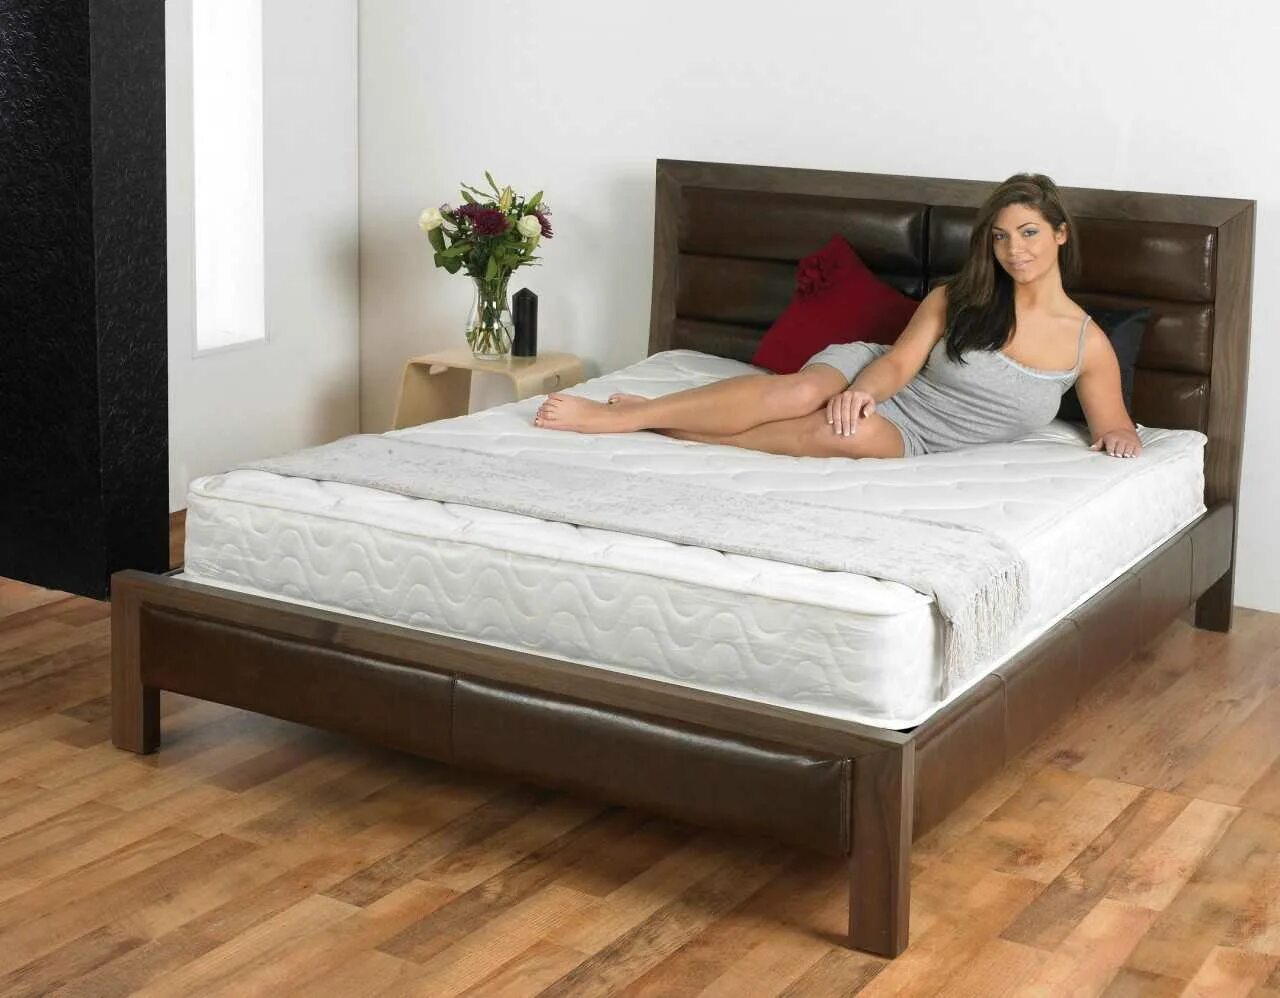 Двуспальная кровать. Кровать с матрасом. Кровать двуспальная обычная. Кровать с высоким матрасом.